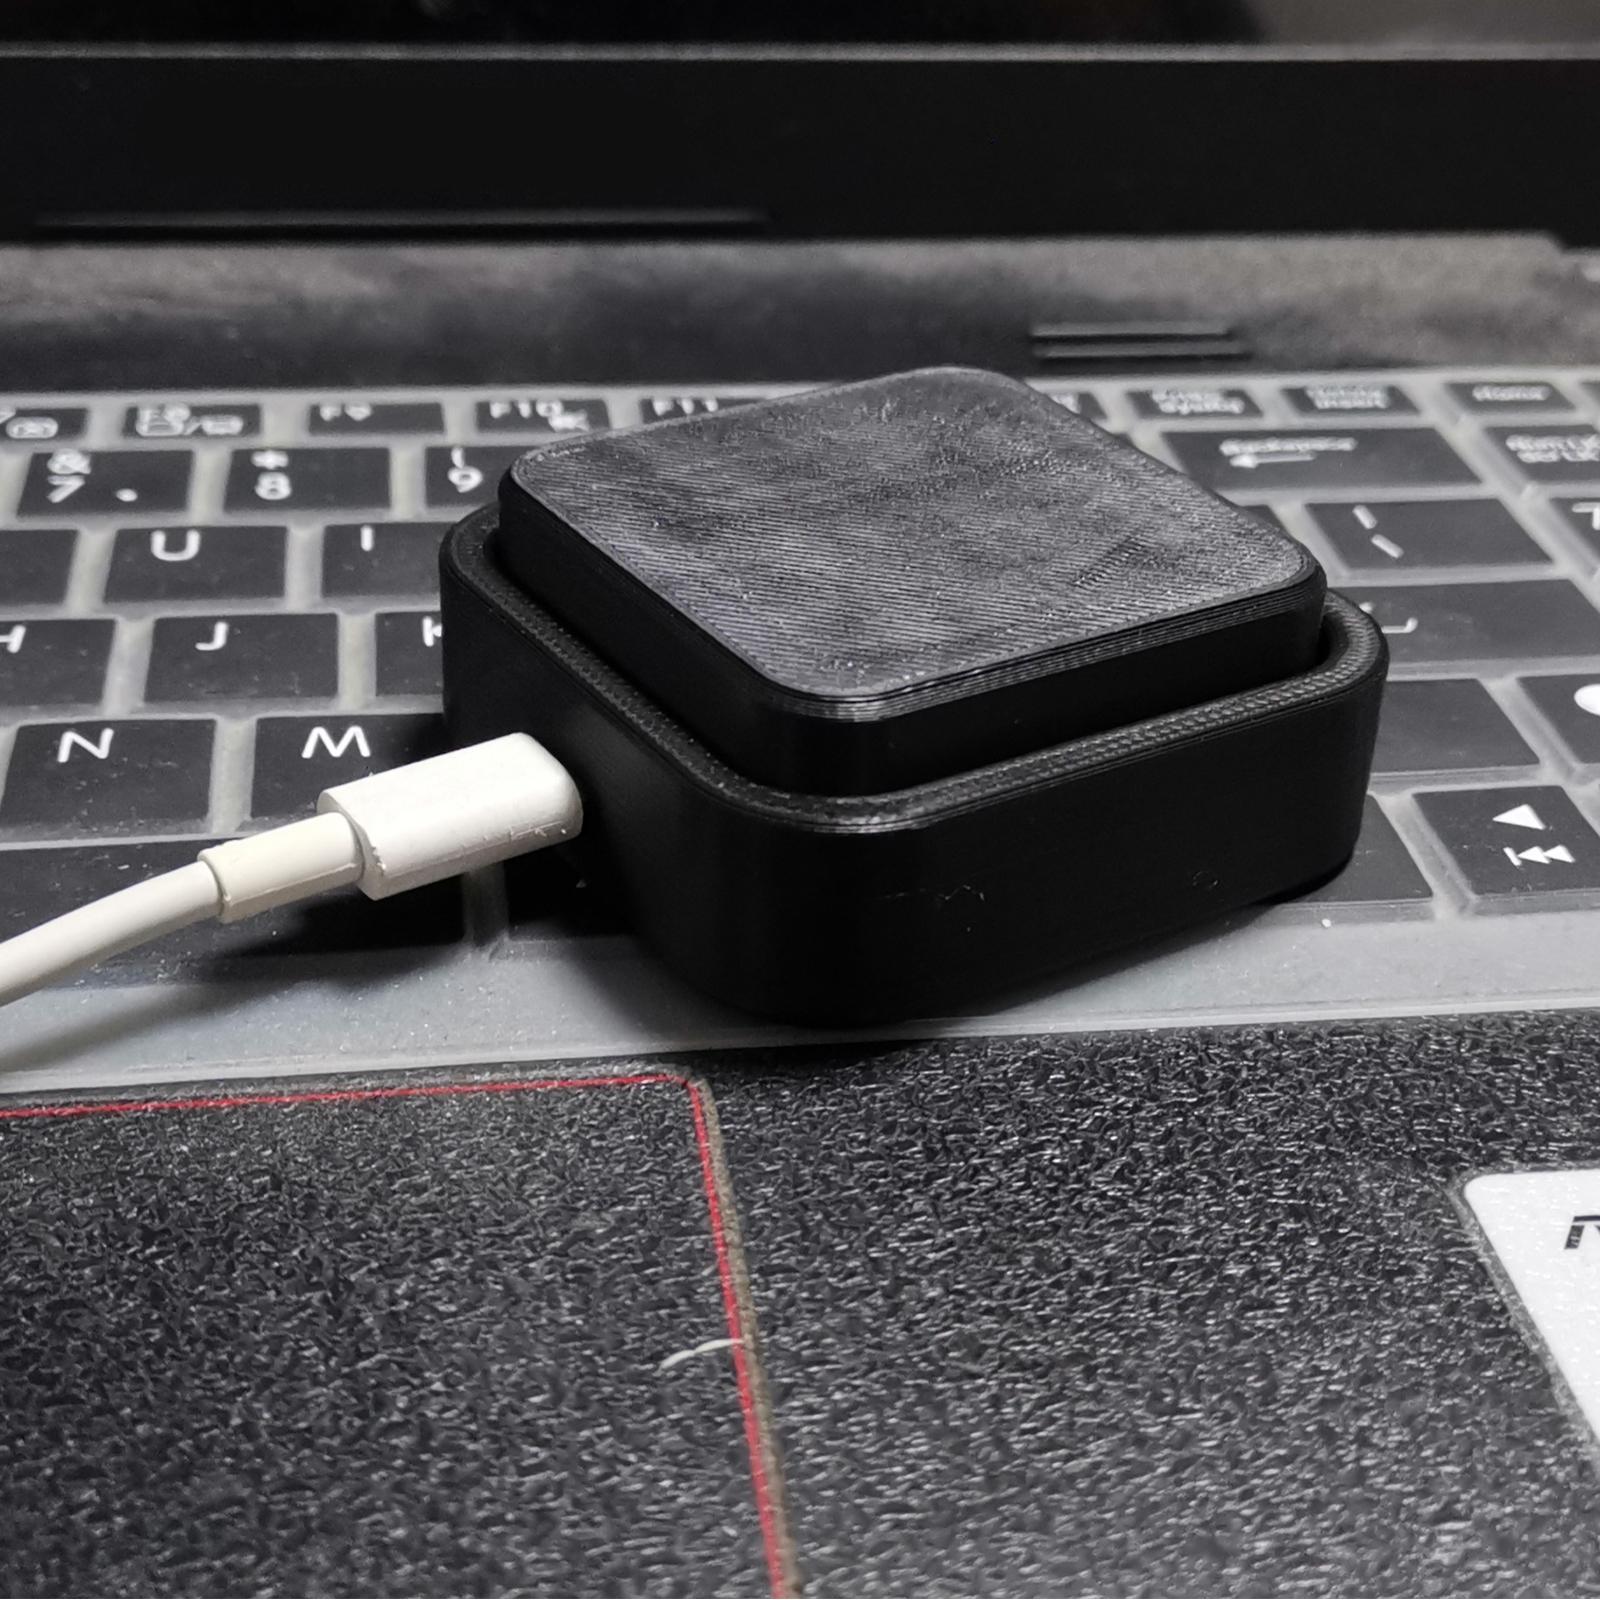 1/2/3 مفتاح كبير USB لوحة مفاتيح ماكرو قابلة للبرمجة لنظام التشغيل Windows Linux MacOS مفتاح ساخن ماوس زر مفتاح واحد USB لوحة مفاتيح صغيرة